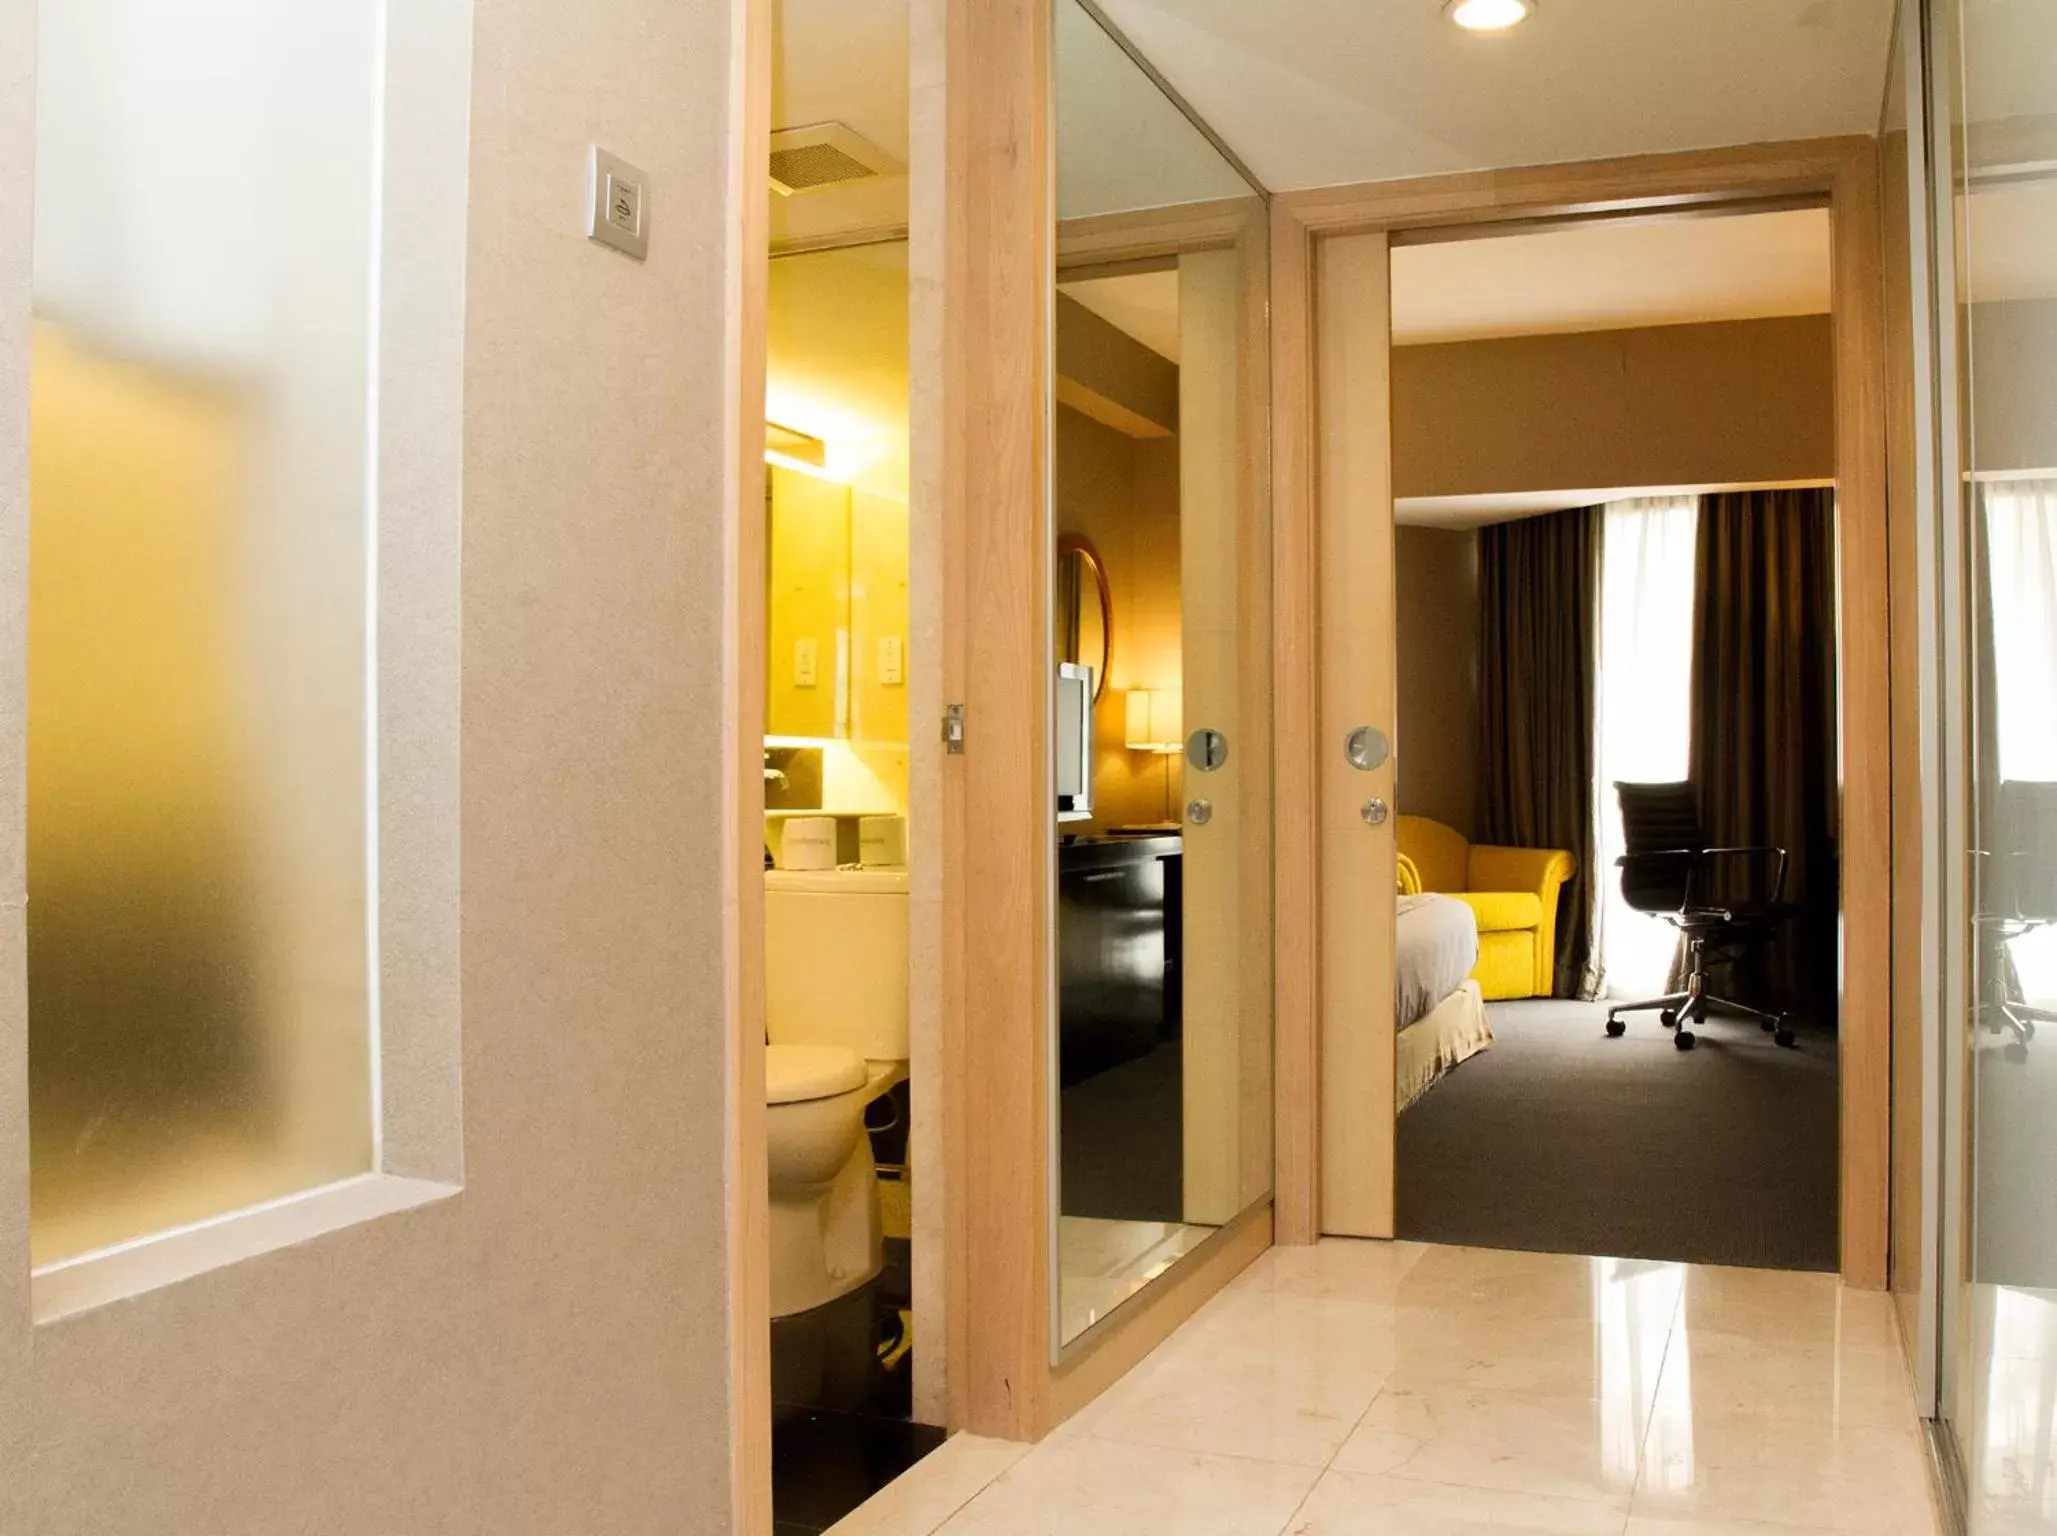 Area and facilities, Bathroom in Grandkemang Hotel